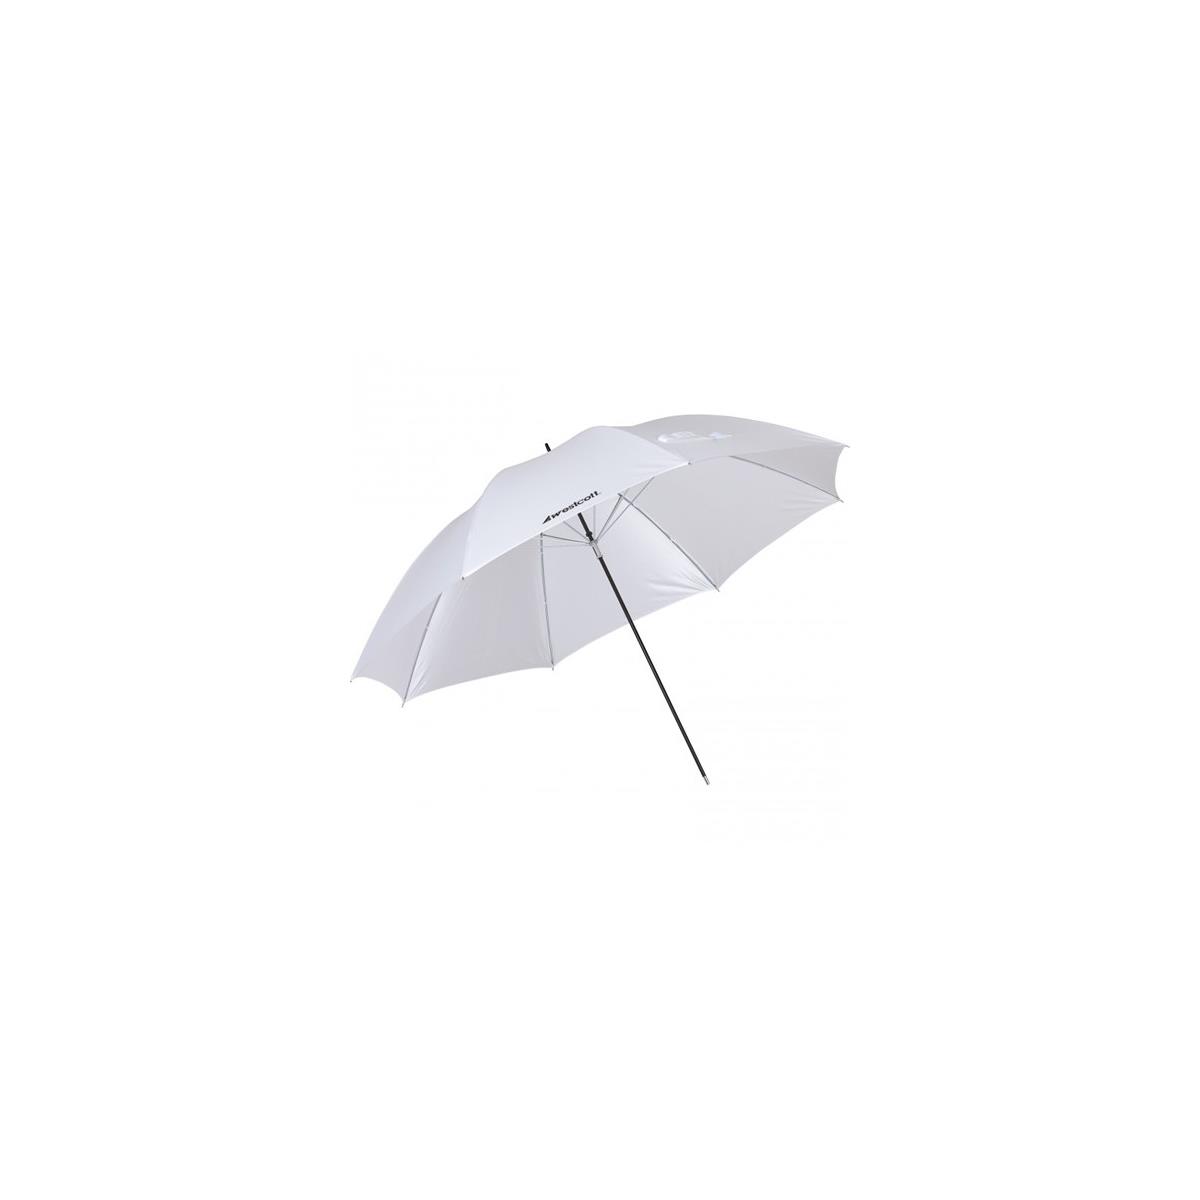 Westcott 2003 White Diffusion Umbrella